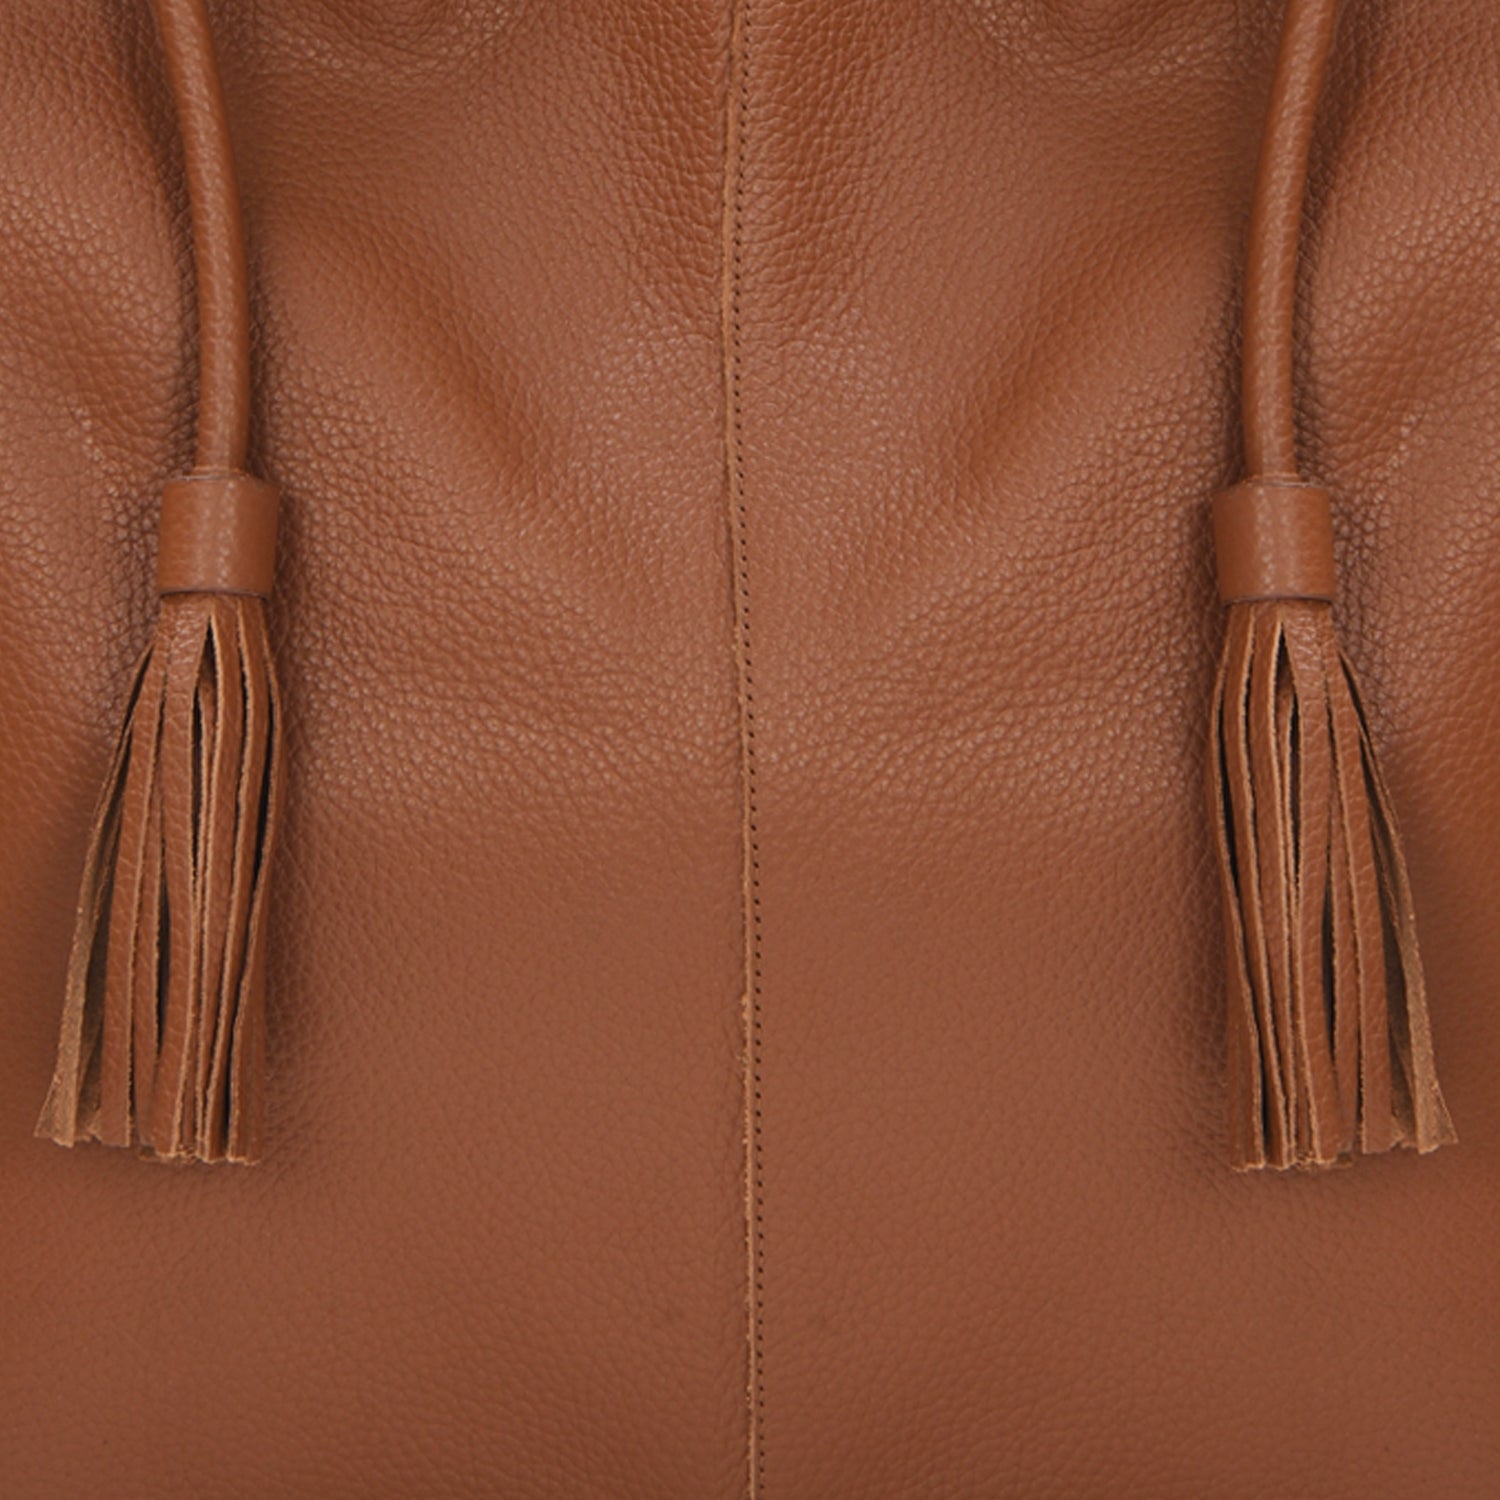 Camel Drawcord Leather Hobo Shoulder Bag